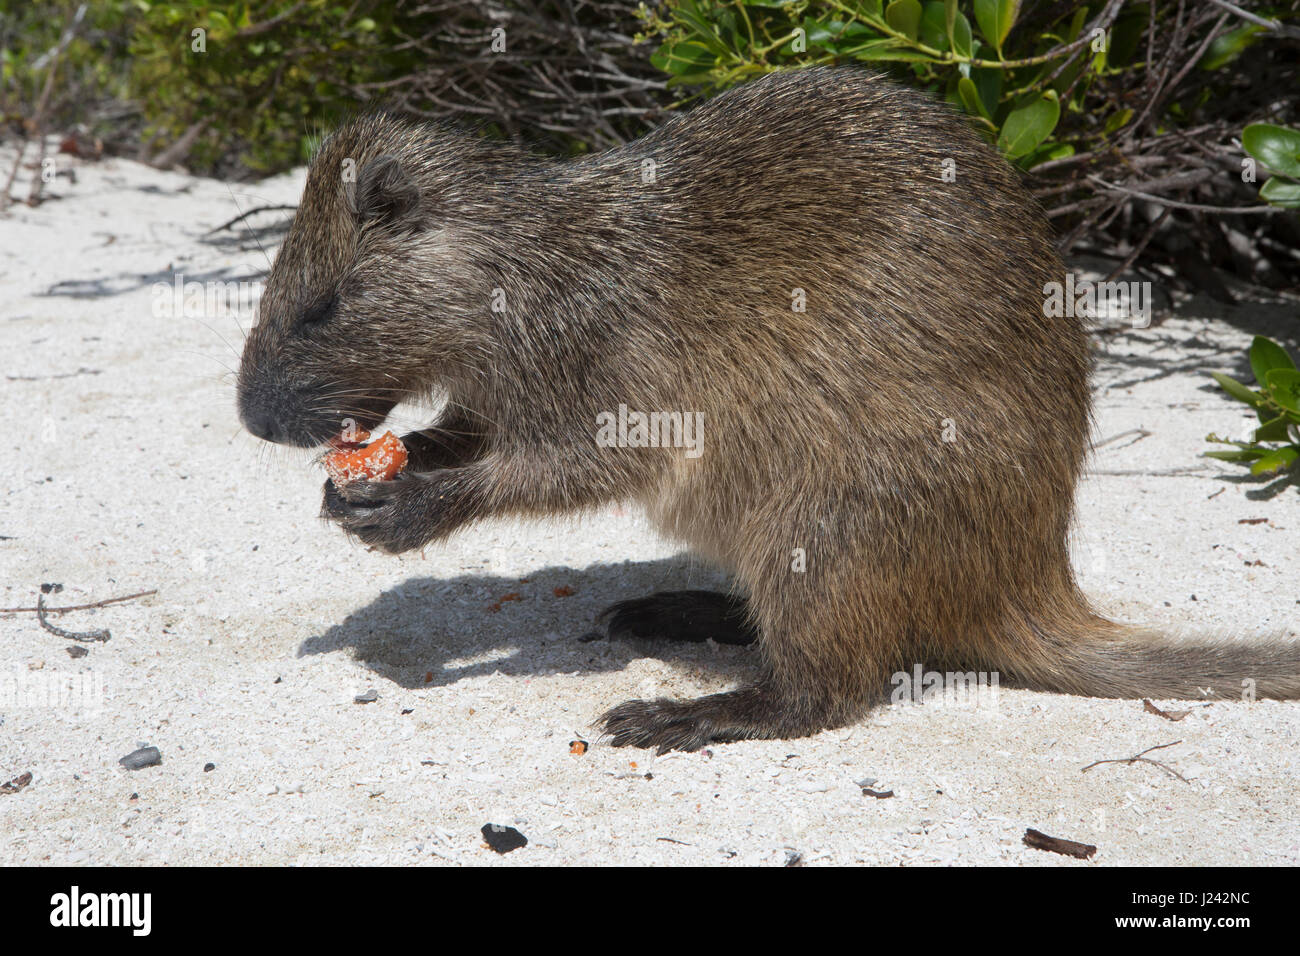 A Desmarest's hutia eats a piece of fruit on a sandy beach in Cuba. Stock Photo